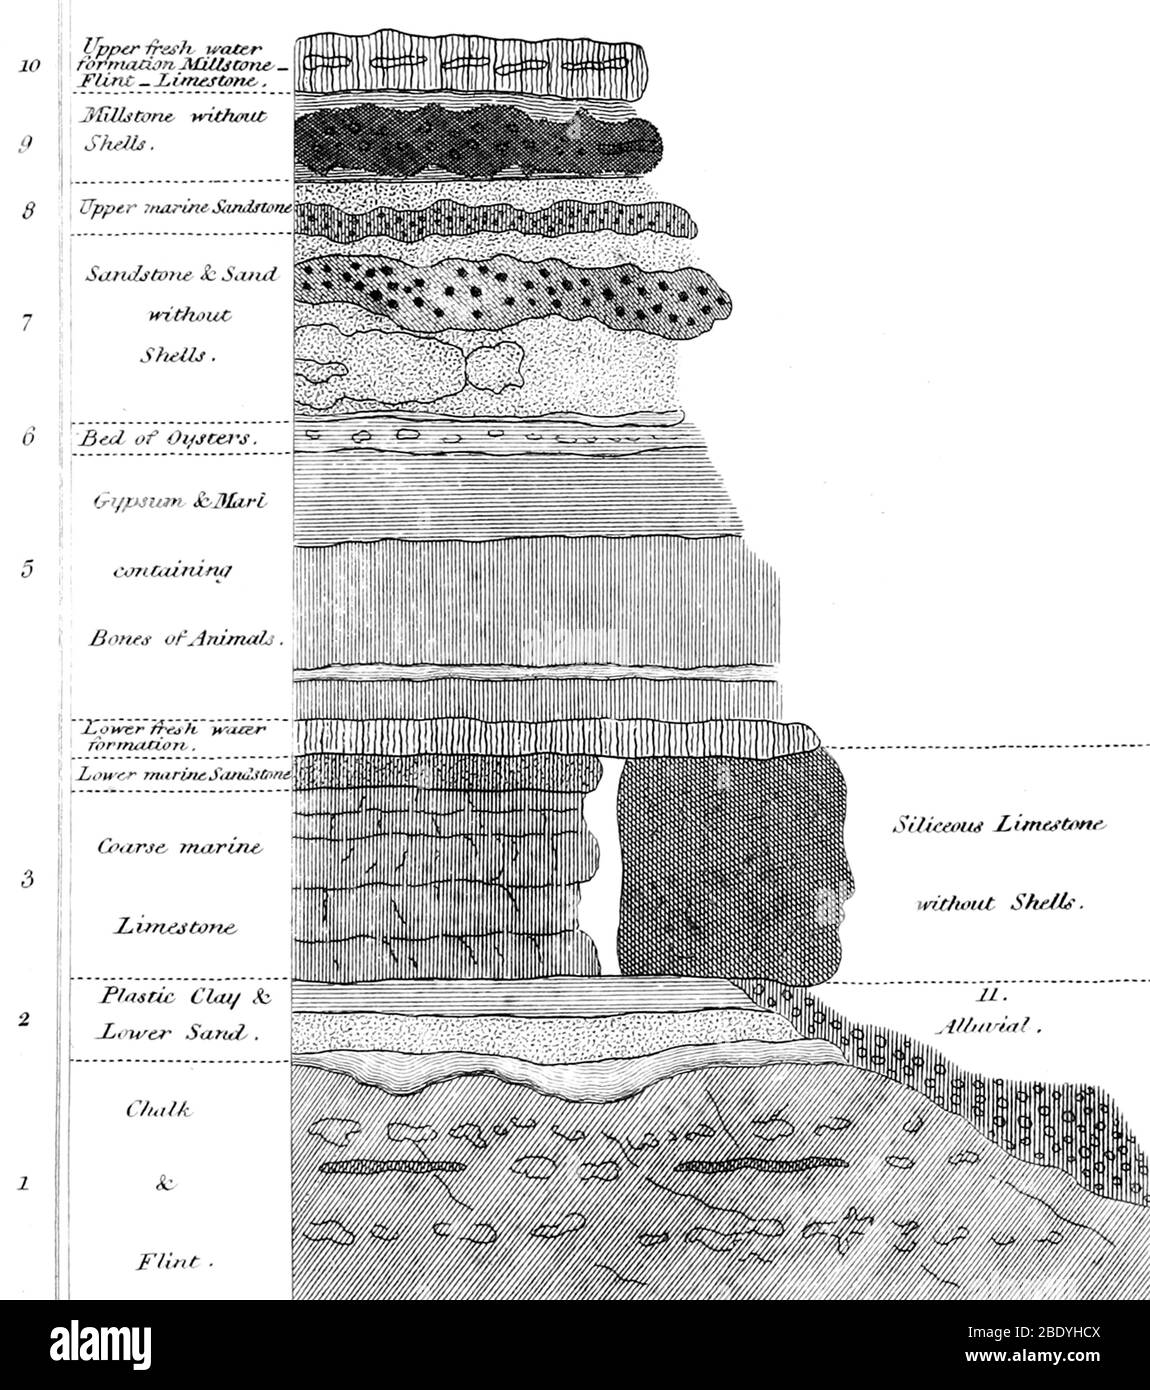 Profilo stratigrafico. Cuvier, come in precedenza Buffon, sostiene che i fossili mostrano un'alternanza di diverse faune durante la storia geologica della terra, varie 'evoluzioni' hanno cambiato il volto della terra e le specie sono diventate estinte e sono state sostituite da nuove. A sostegno di questa ipotesi studiò e mappò le successioni stratigrafiche del bacino di Parigi. In collaborazione con il giovane geologo Alexandre Brongniart, dopo quattro anni di lavoro, nel 1808 pubblicarono la 'Essai minéraligique sur les environs de Paris' (1a edizione 1808), completa di una mappa geologica A. Foto Stock